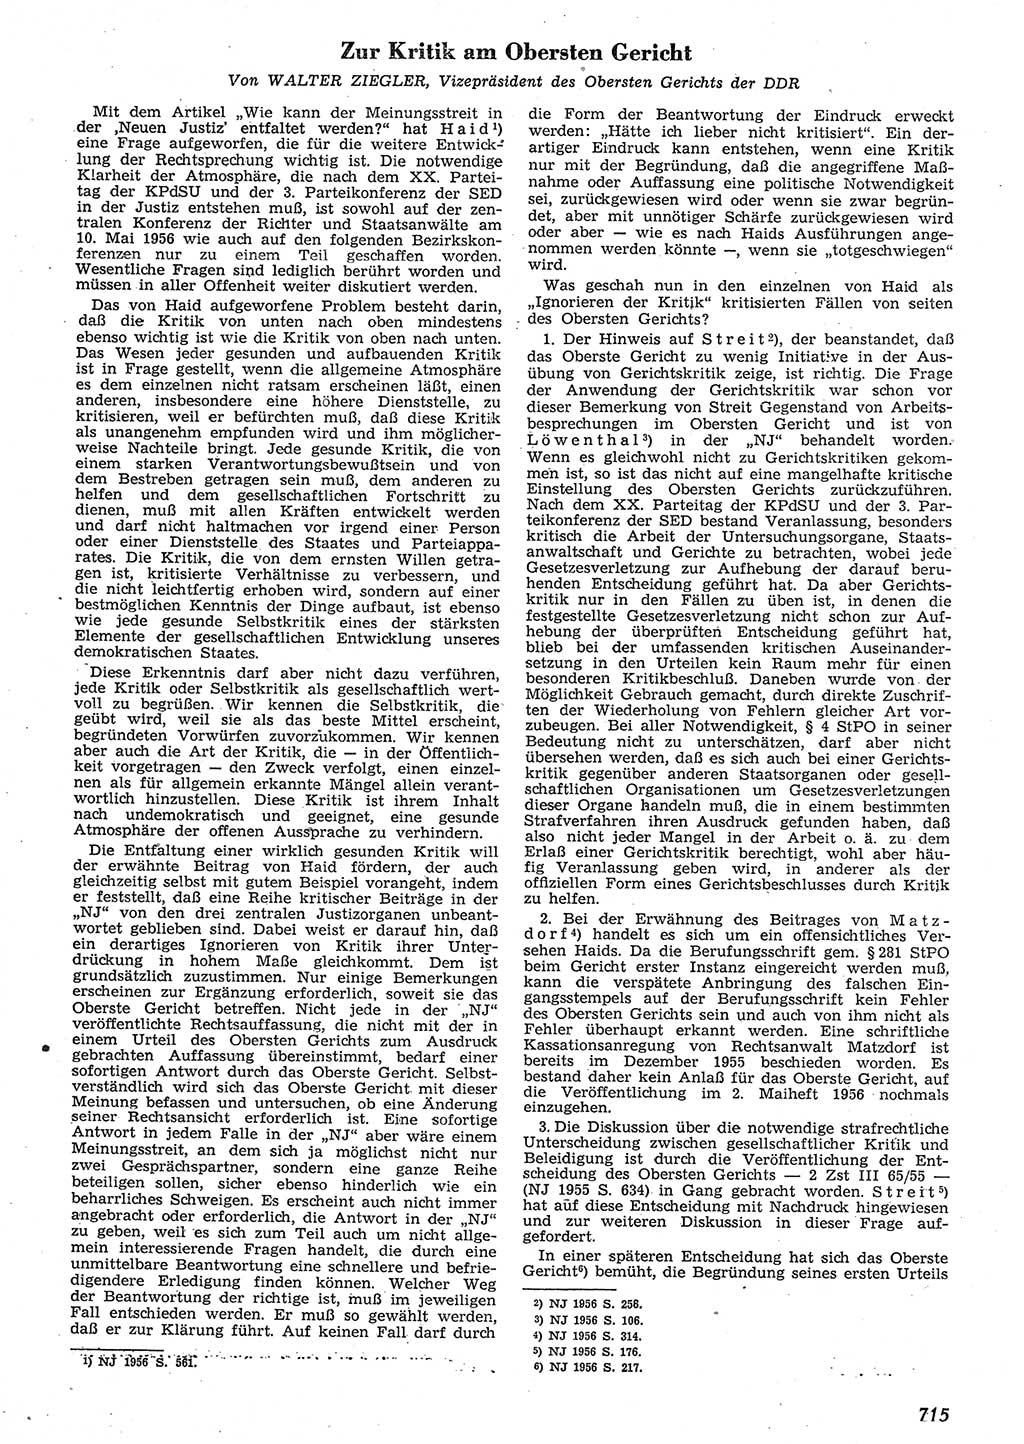 Neue Justiz (NJ), Zeitschrift für Recht und Rechtswissenschaft [Deutsche Demokratische Republik (DDR)], 10. Jahrgang 1956, Seite 715 (NJ DDR 1956, S. 715)